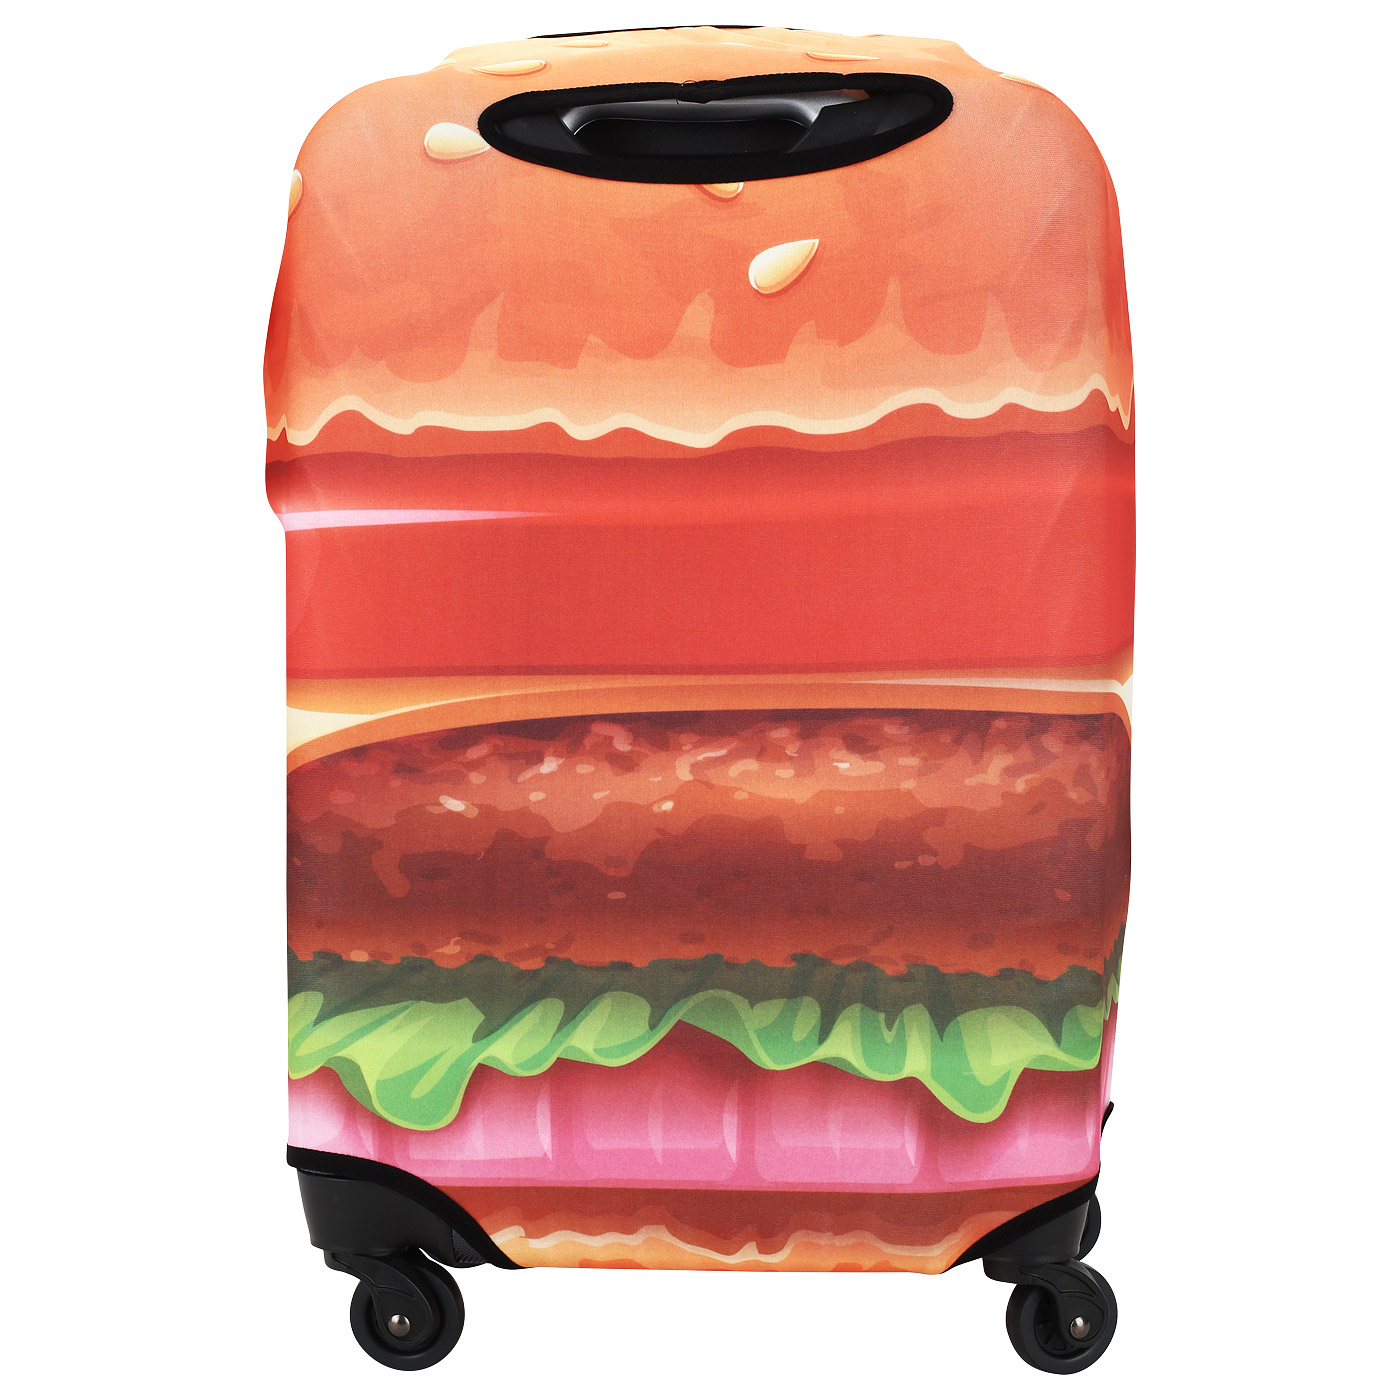 Чехол для компактного чемодана Eberhart Burger